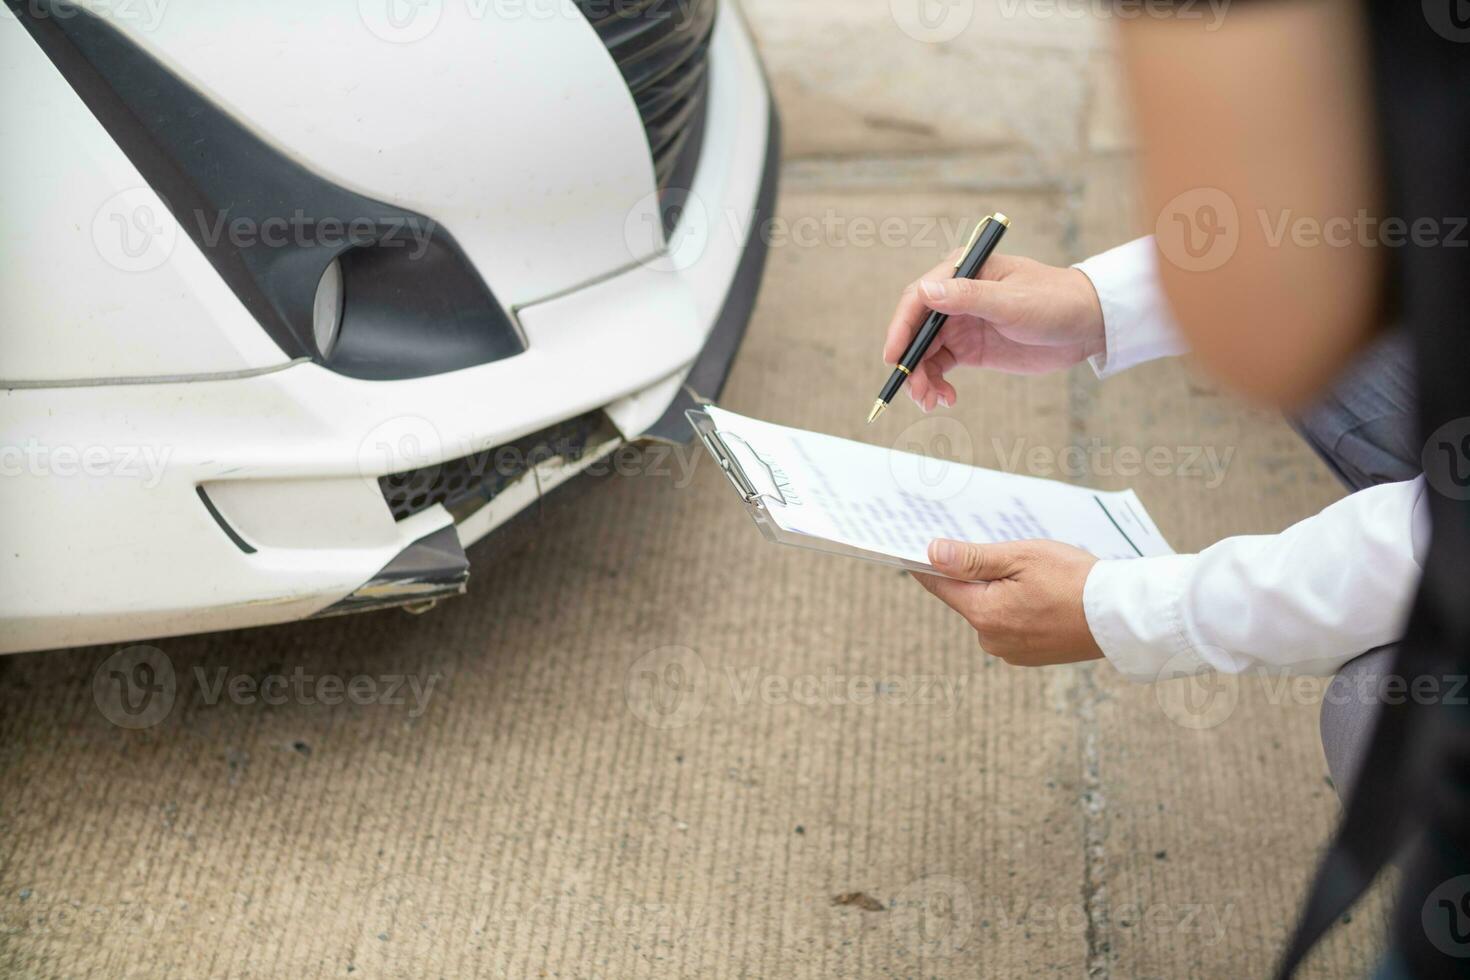 försäkring agenter träffa med kunder när olyckor inträffa till inspektera skada och dokumentera försäkring påståenden skyndsamt. begrepp av bil försäkring agenter till enträget inspektera skada för kunder. foto